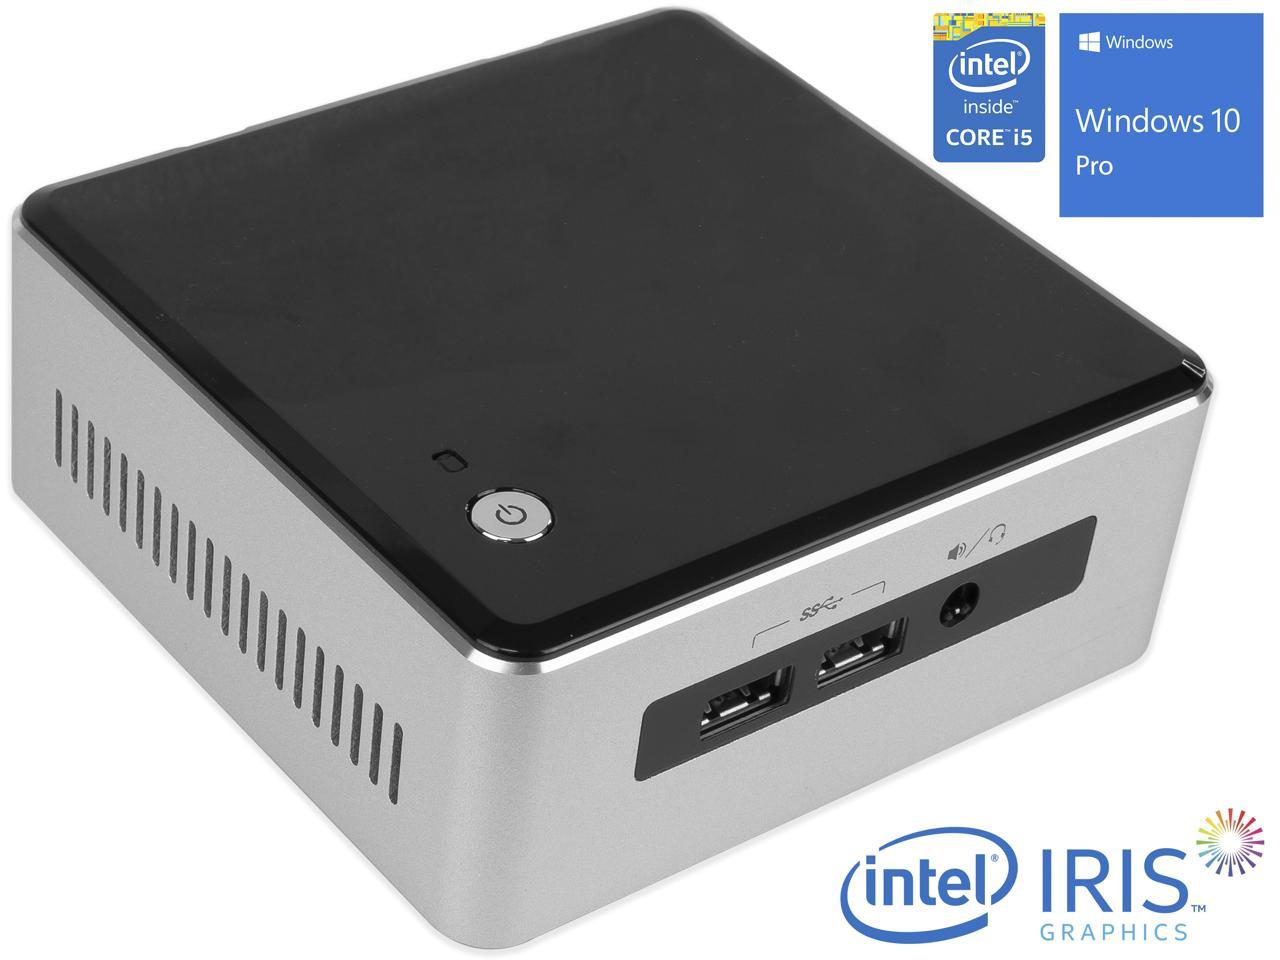 Intel NUC5i5RYH Mini PC, Intel Core i5-5250U Upto 2.7GHz, 8GB RAM, 256GB SSD, Micro HDMI, Mini DisplayPort, Wi-Fi, Bluetooth, Windows 10 Pro